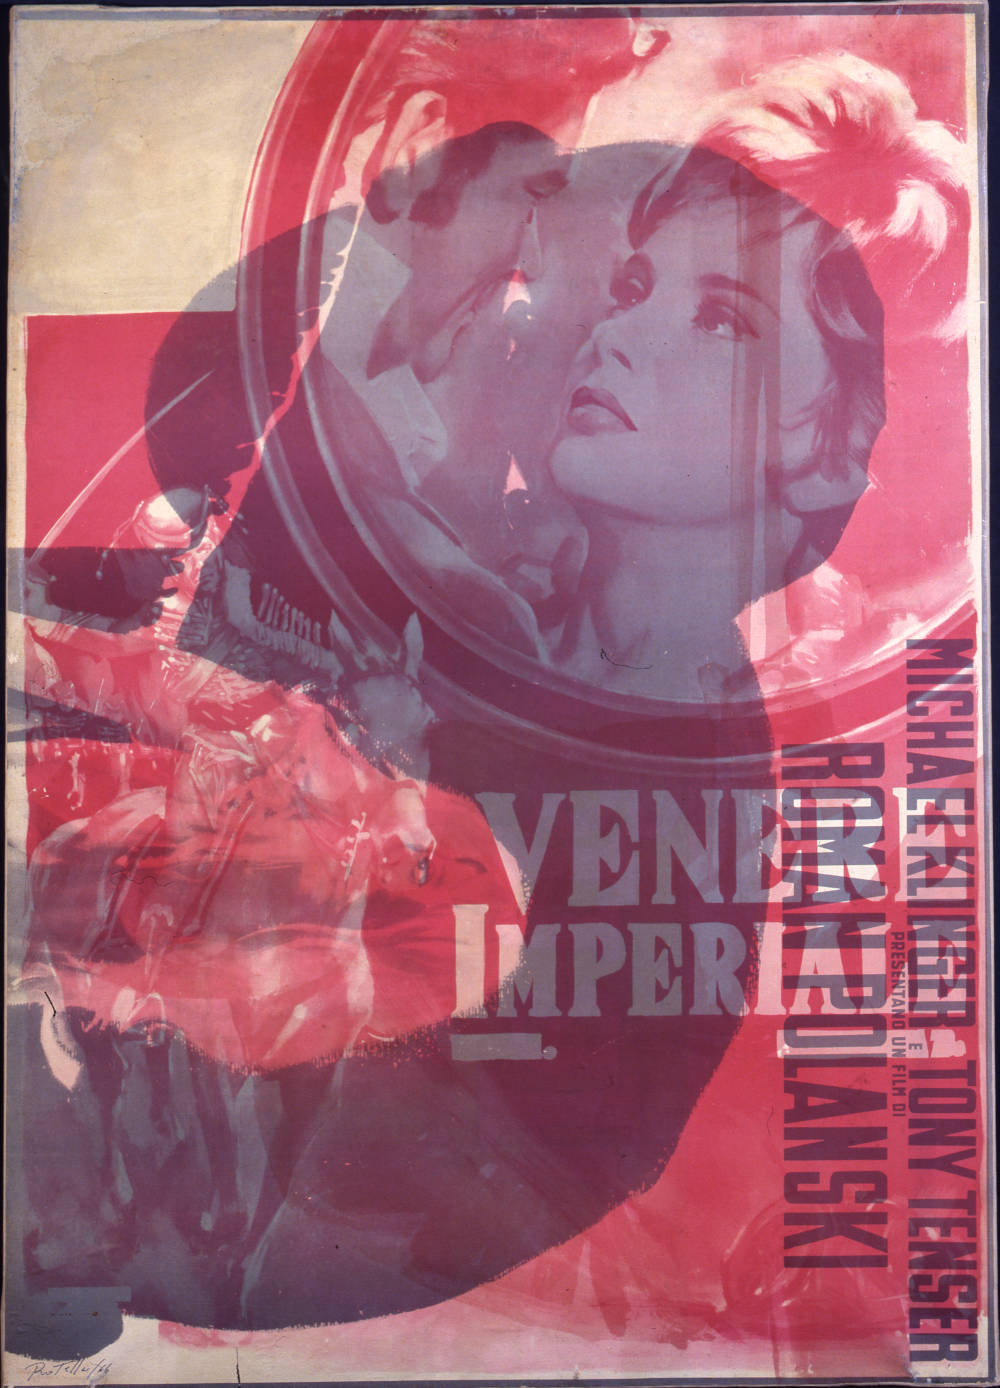 Mimmo Rotella, Venere Imperiale, 1966